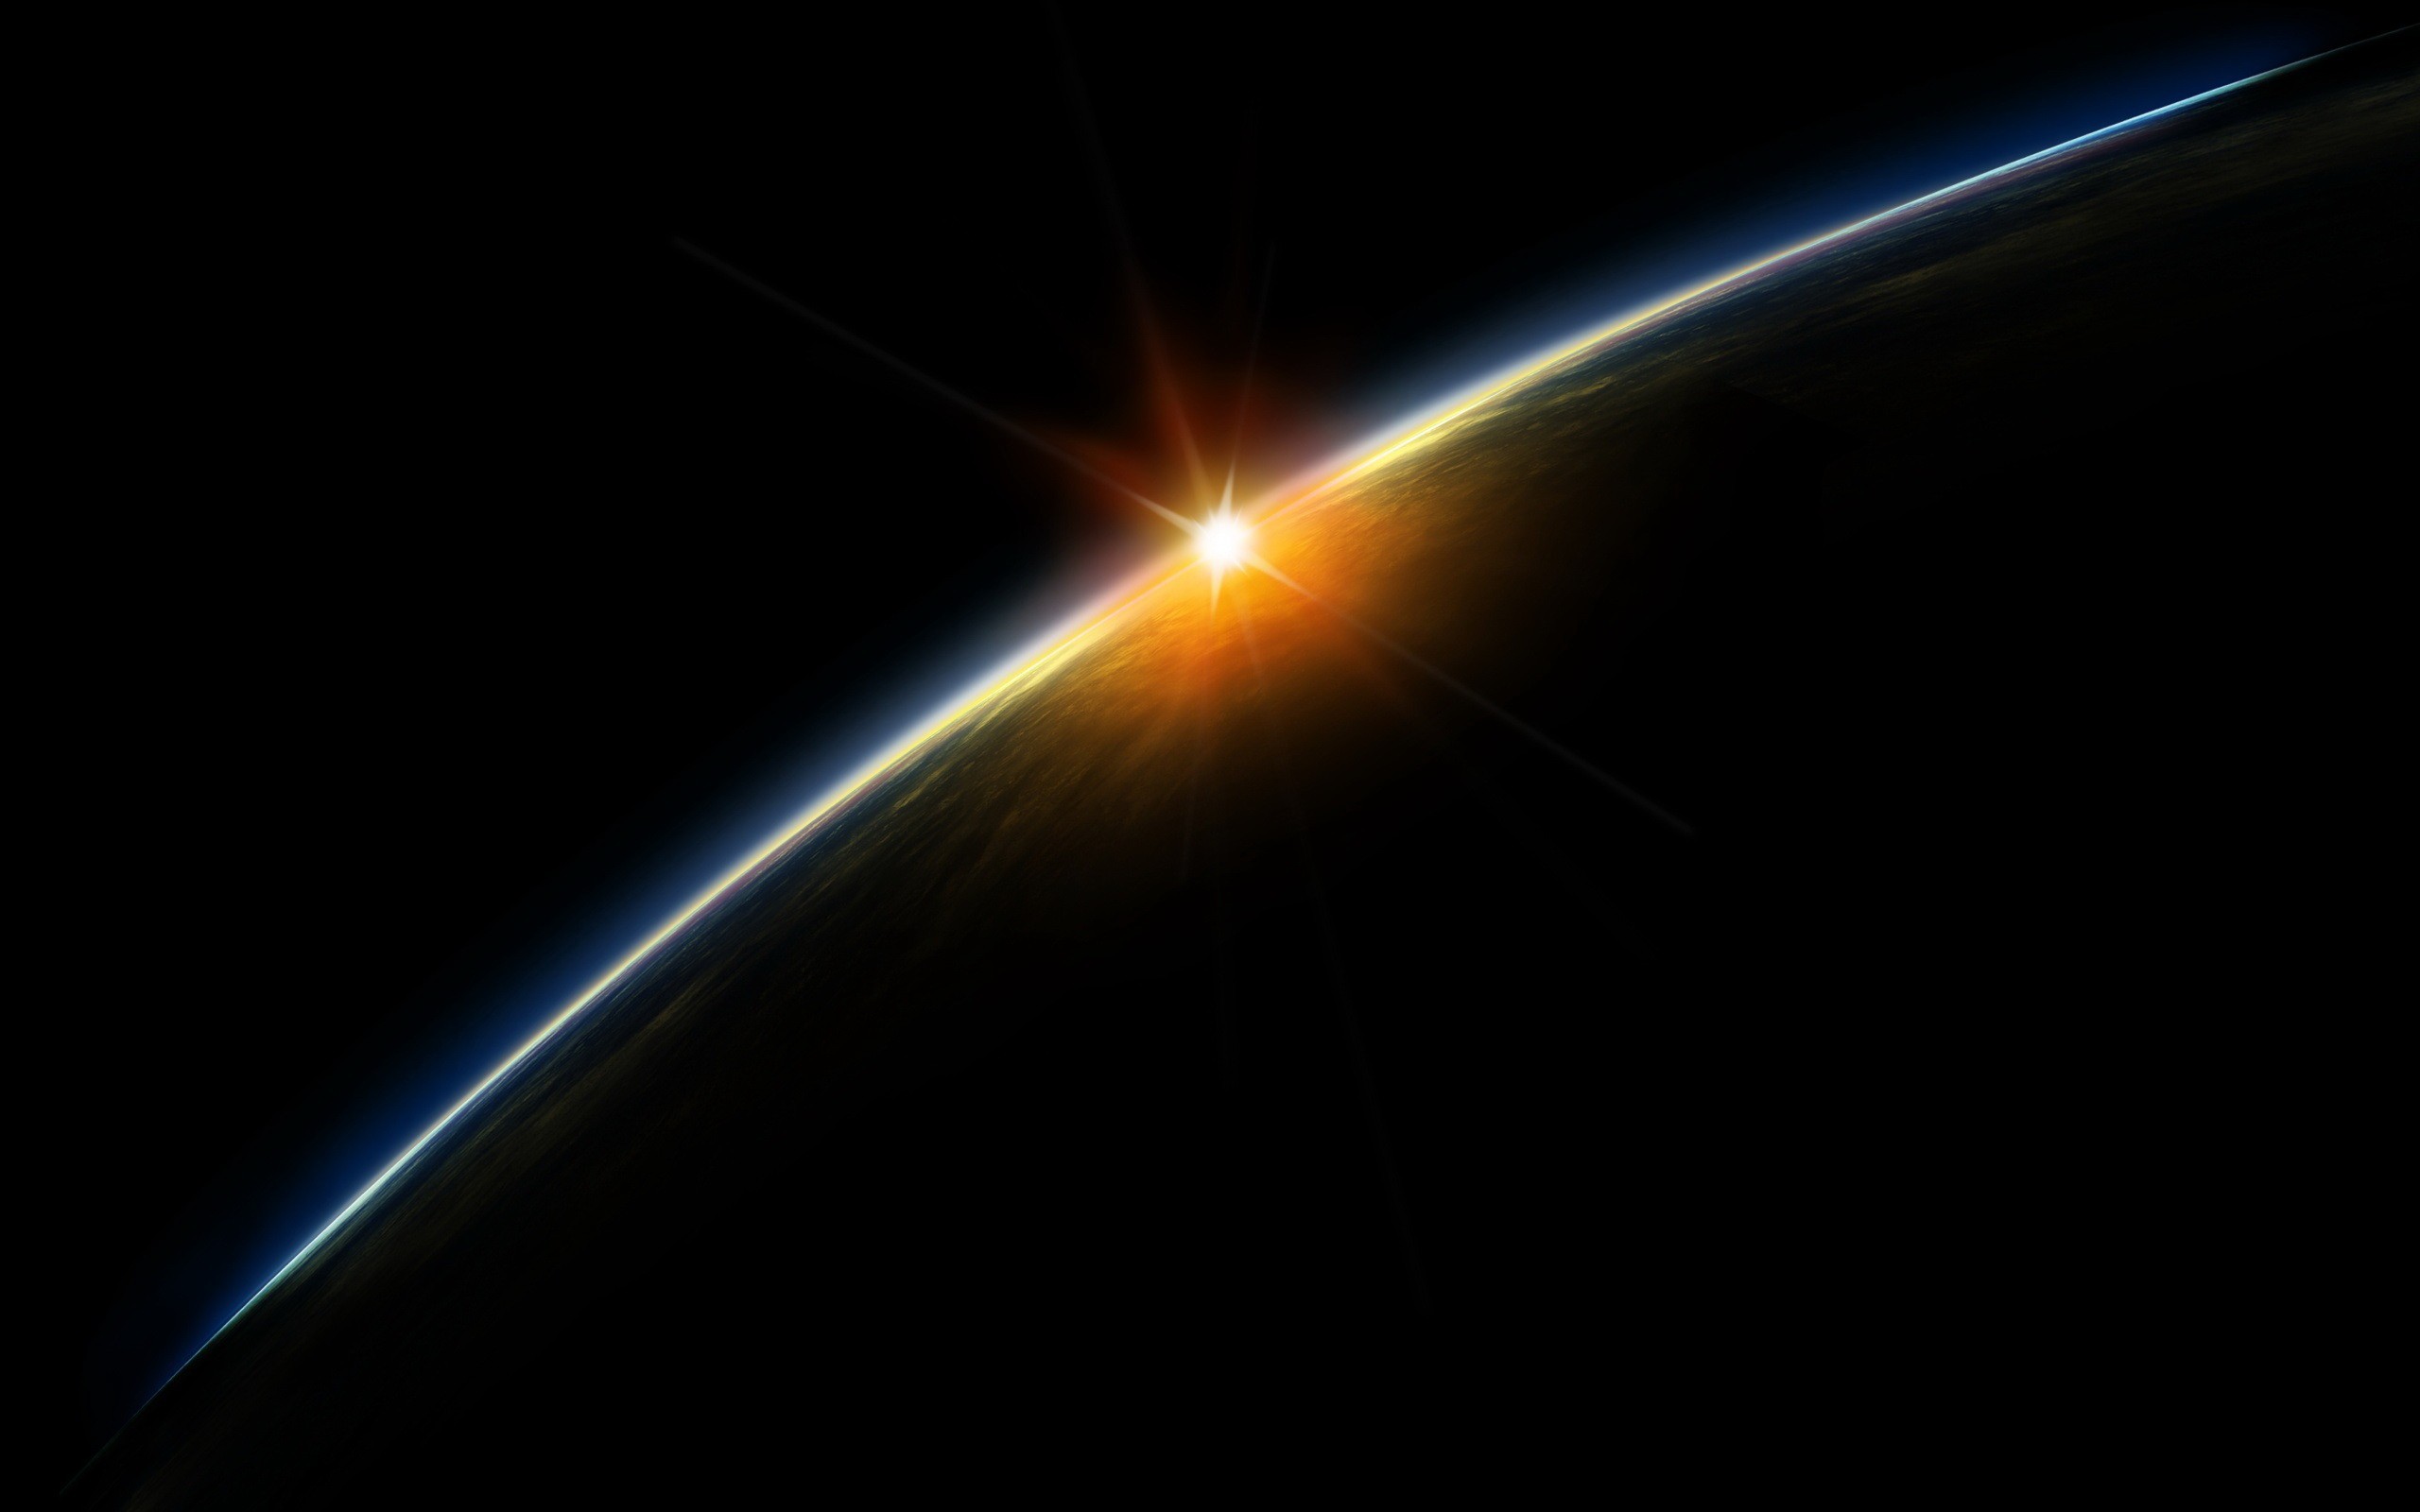 Обои Восход солнца над планетой картинки на рабочий стол на тему Космос - скачать без смс